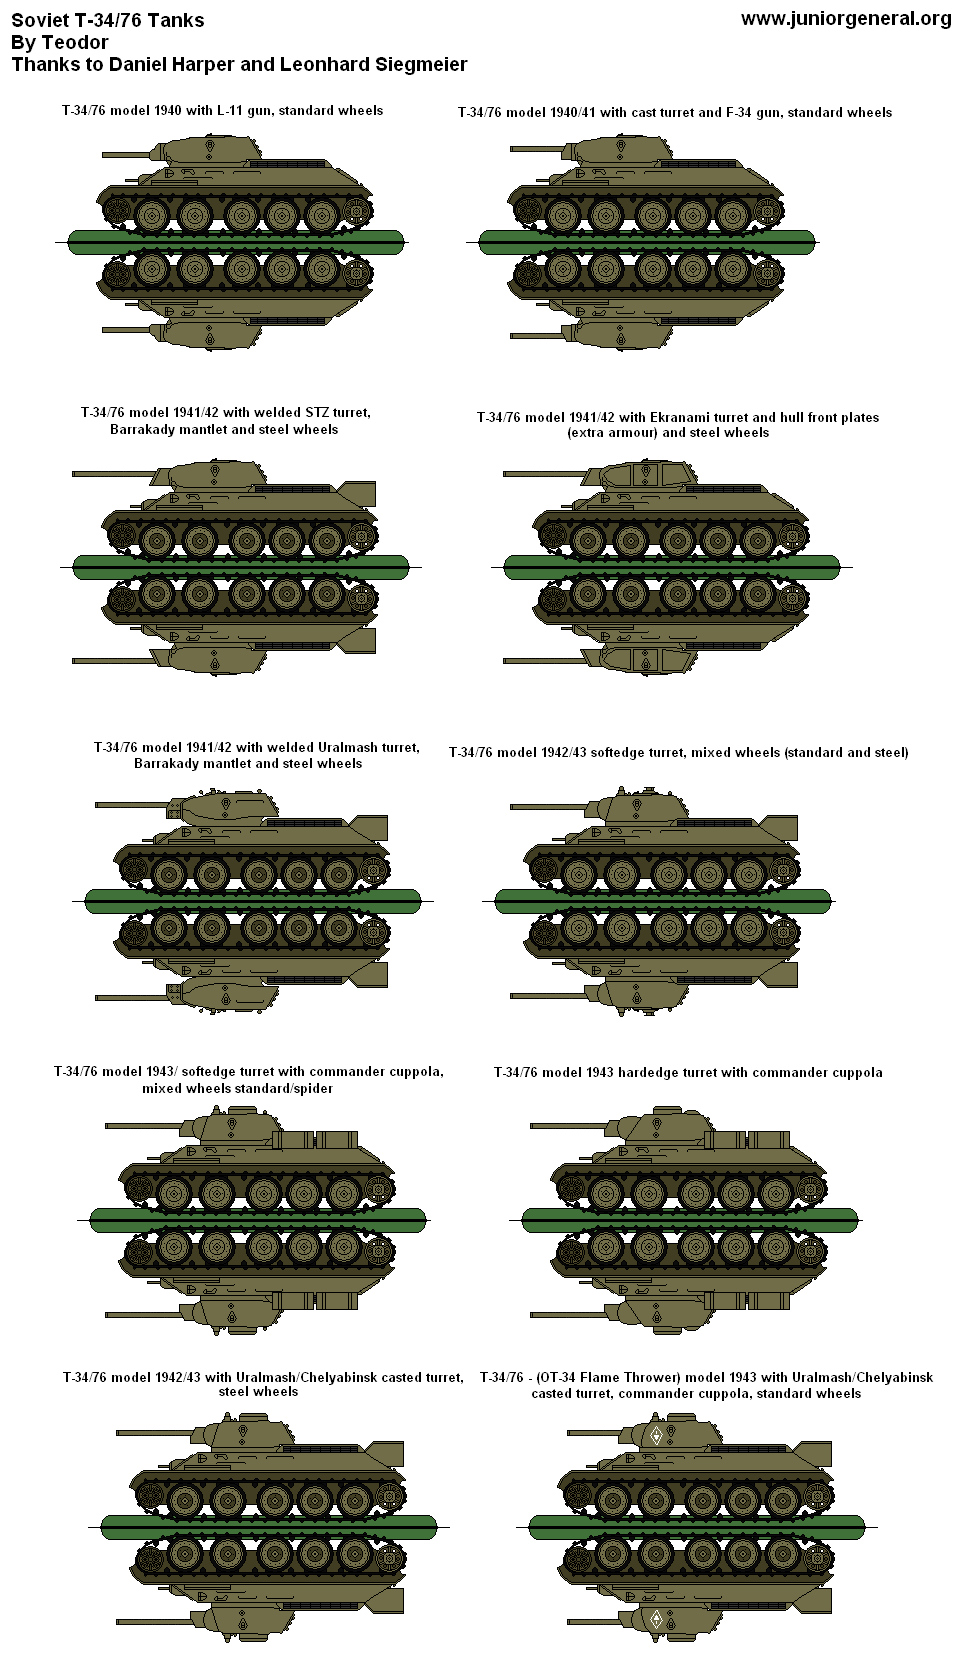 Soviet T-34/76 Tanks